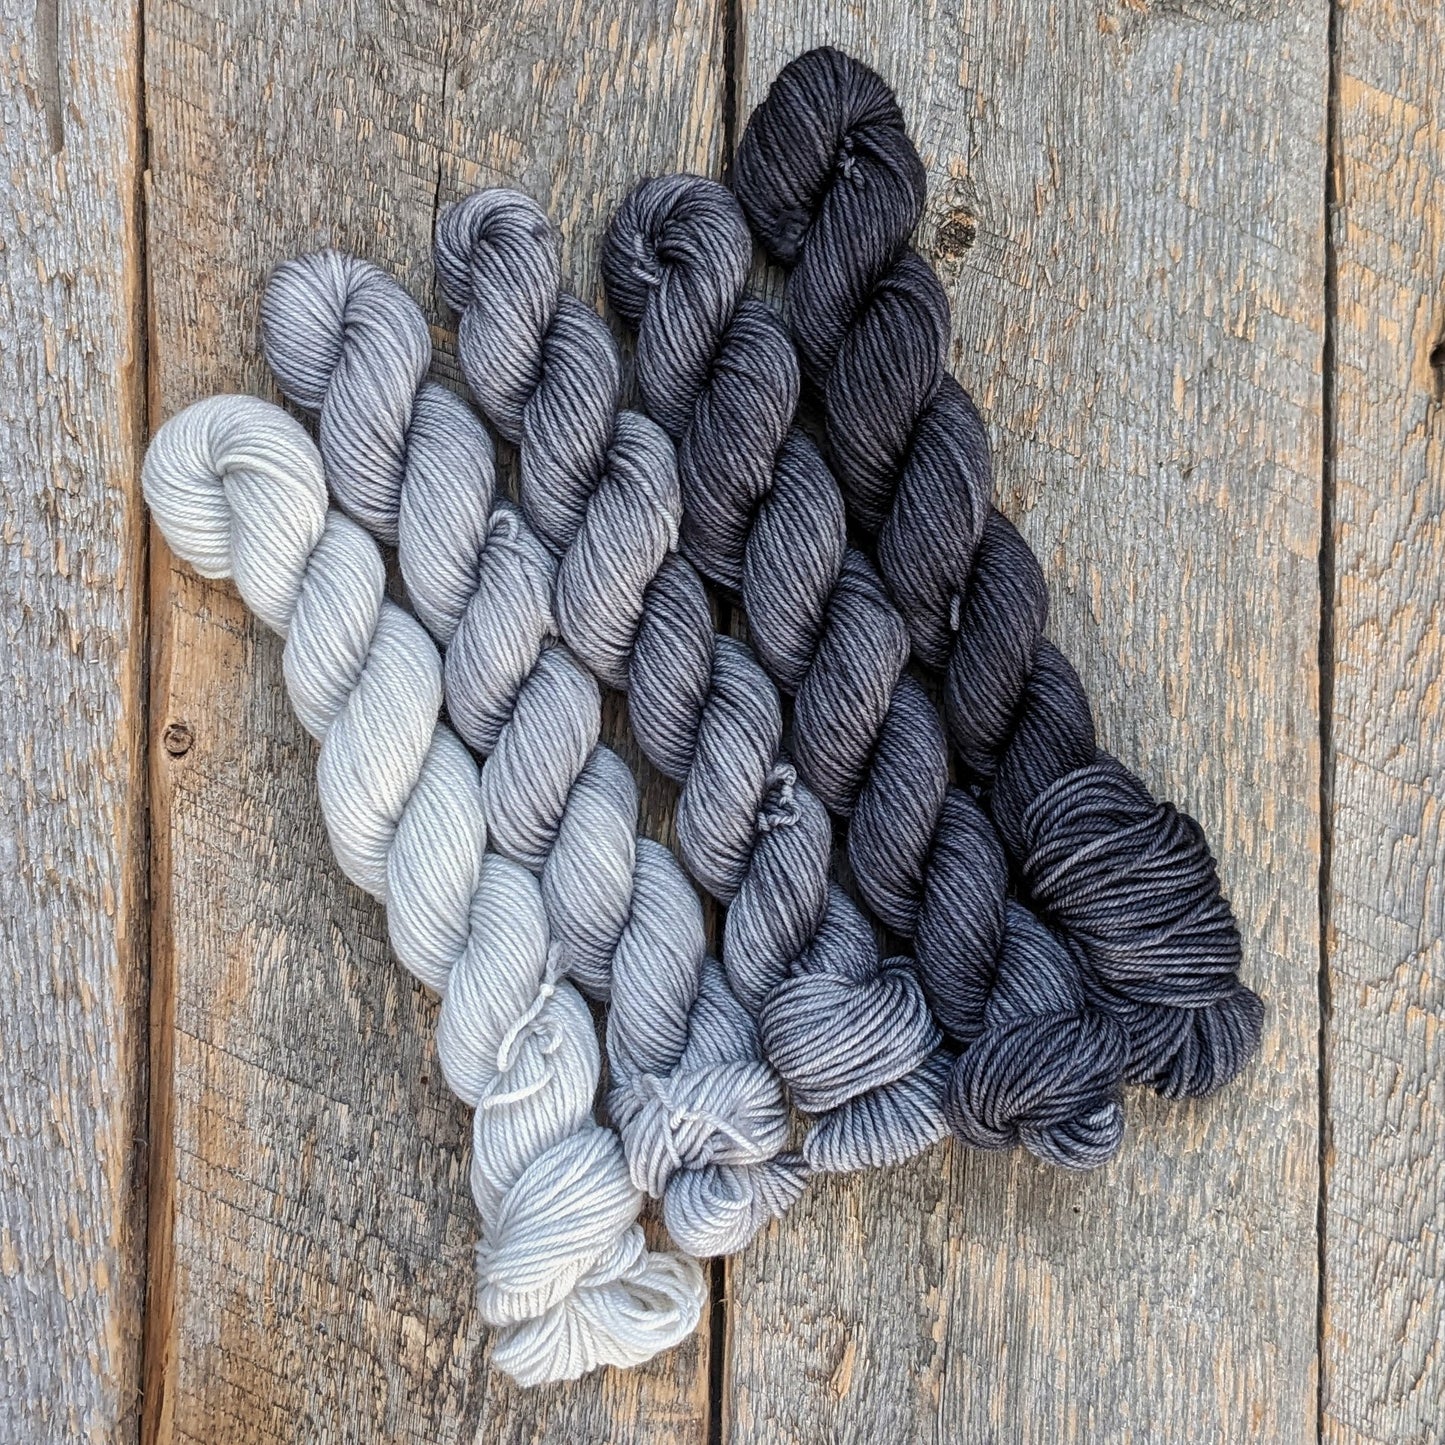 gradient mini set, gray yarn, black yarn, ansel adams gradation, mini skeins, twisted mini skeins, sock yarn, fingering yarn, black hand dyed yarn, gray hand dyed yarn